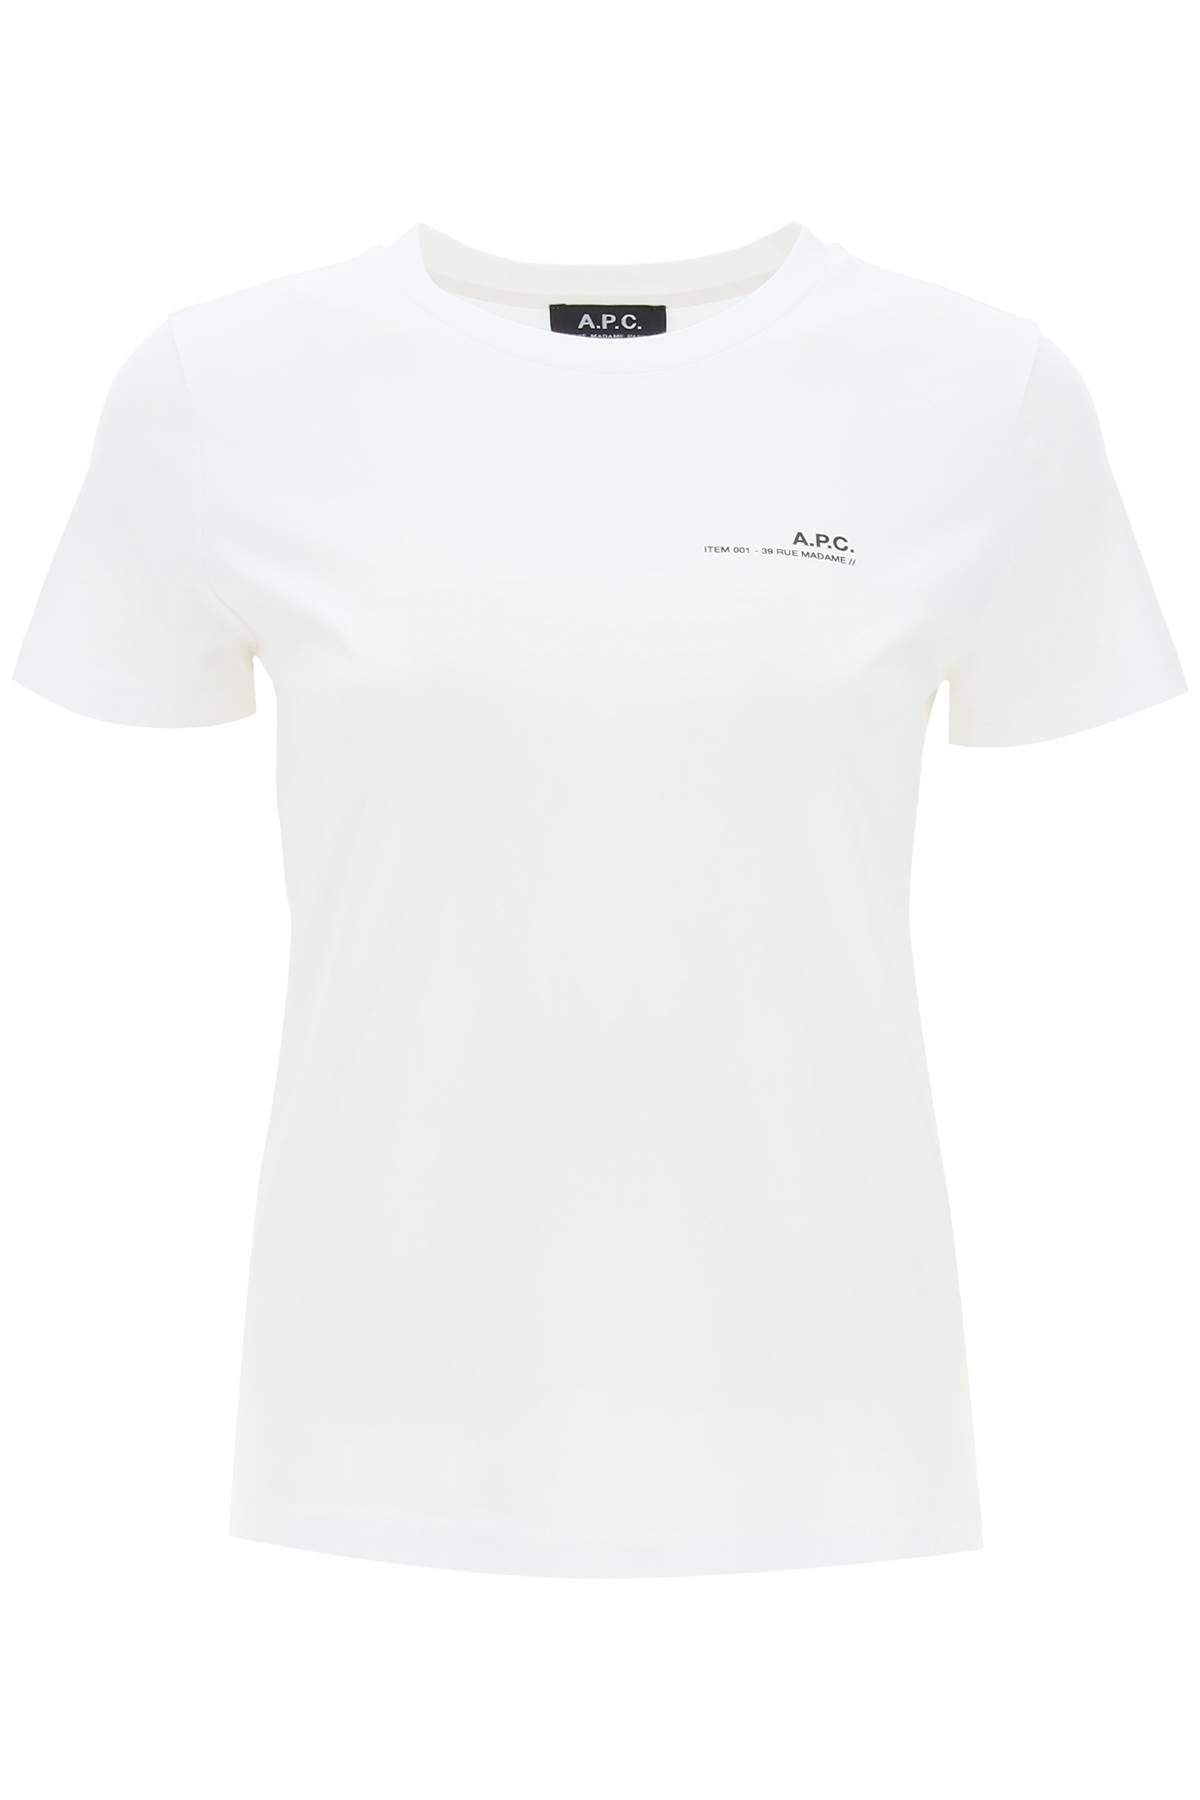 A.p.c. item t-shirt-0